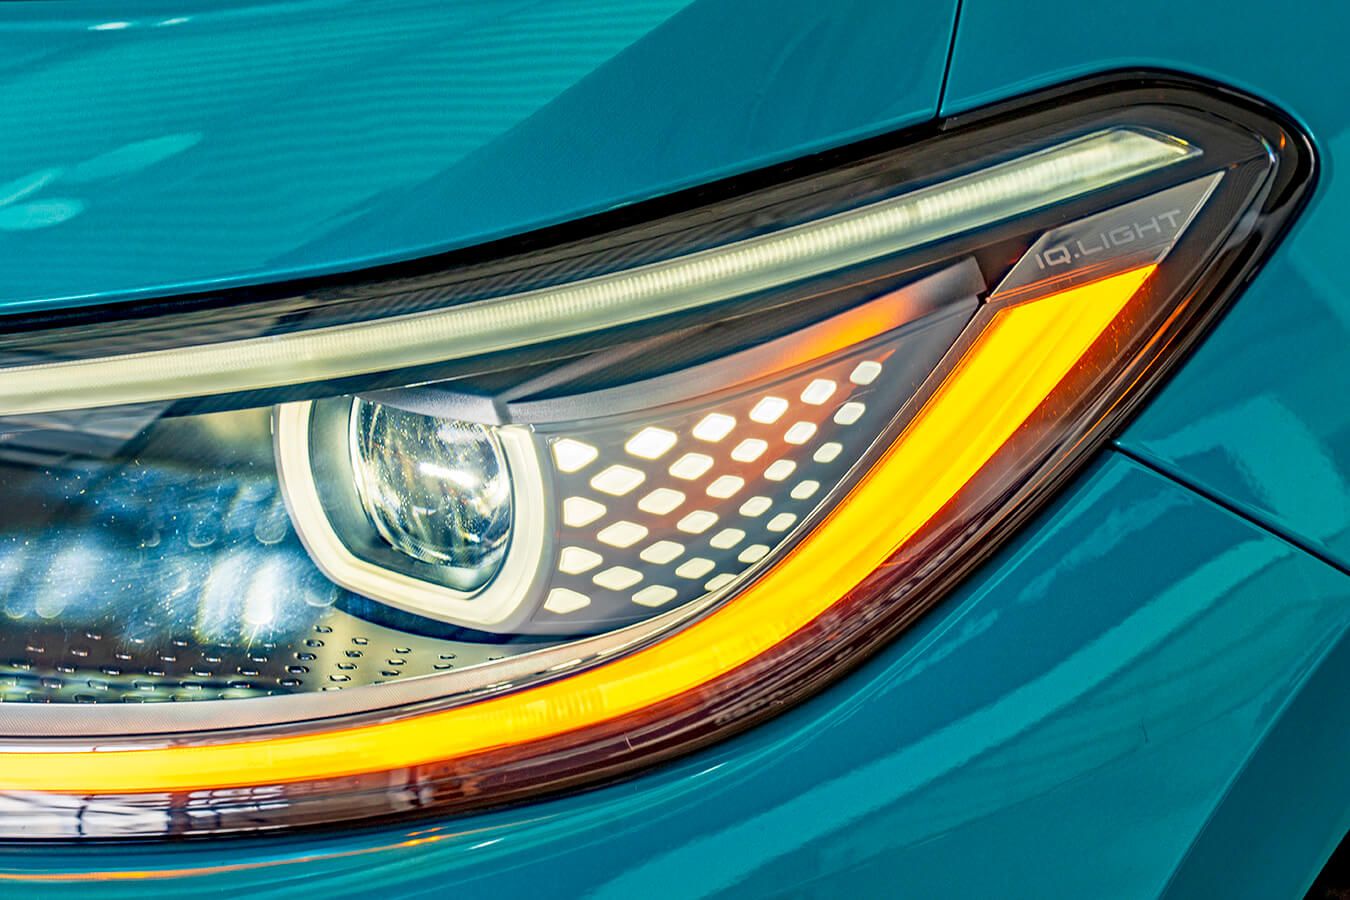 Volkswagen IQ LIGHT LED Matrix